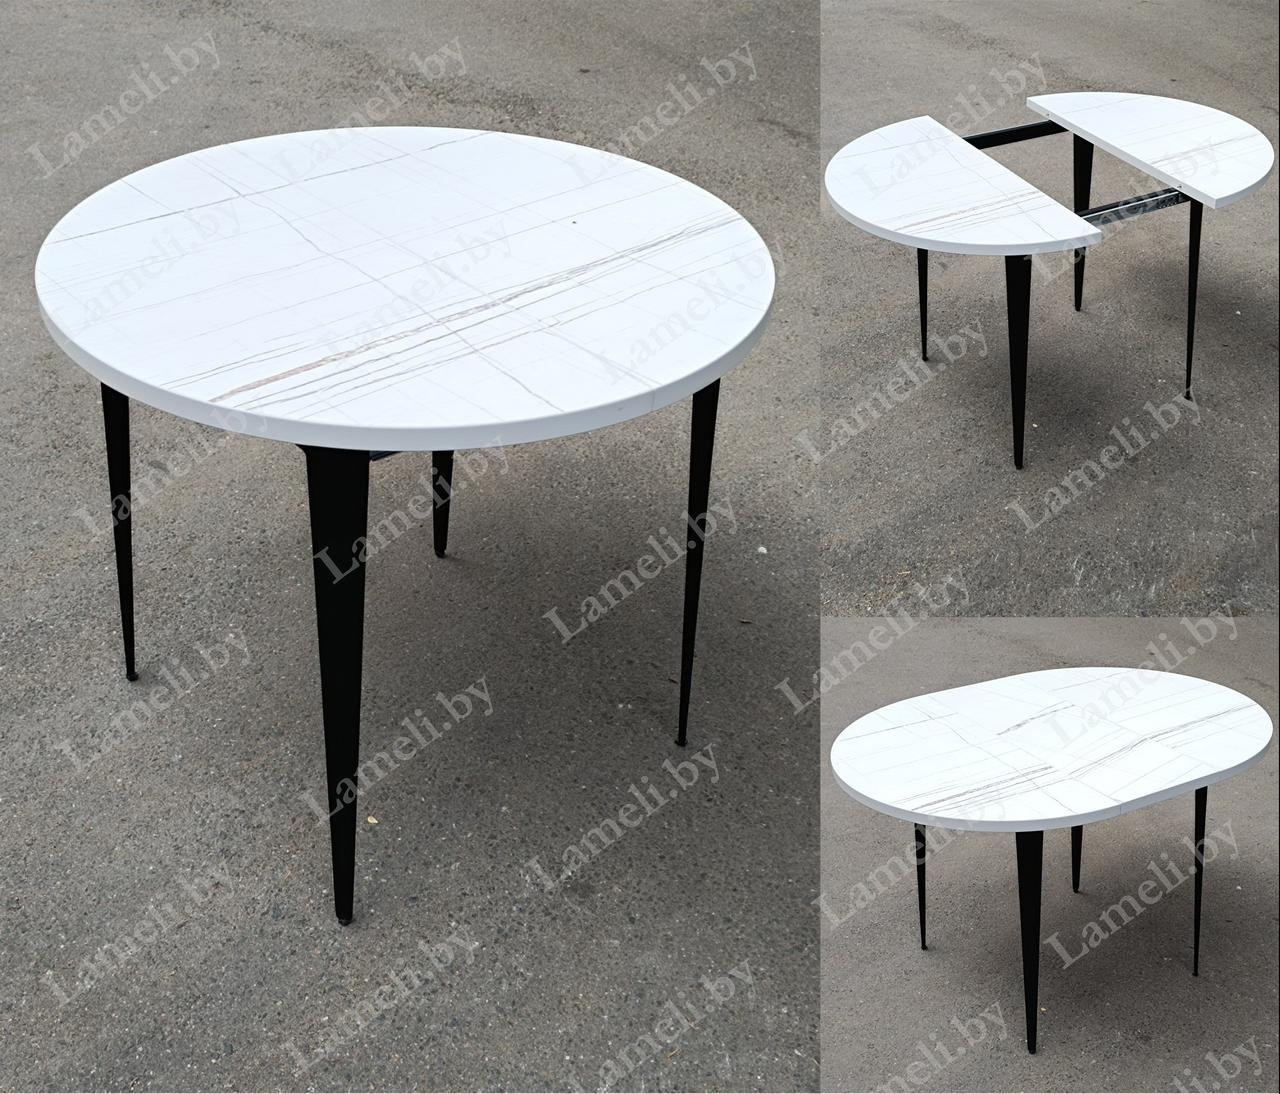 РАЗДВИЖНОЙ КРУГЛЫЙ стол из массива дуба, ЛДСП или постформинга  на металлокаркасе серии К-3. ЛЮБОЙ размер,цвет